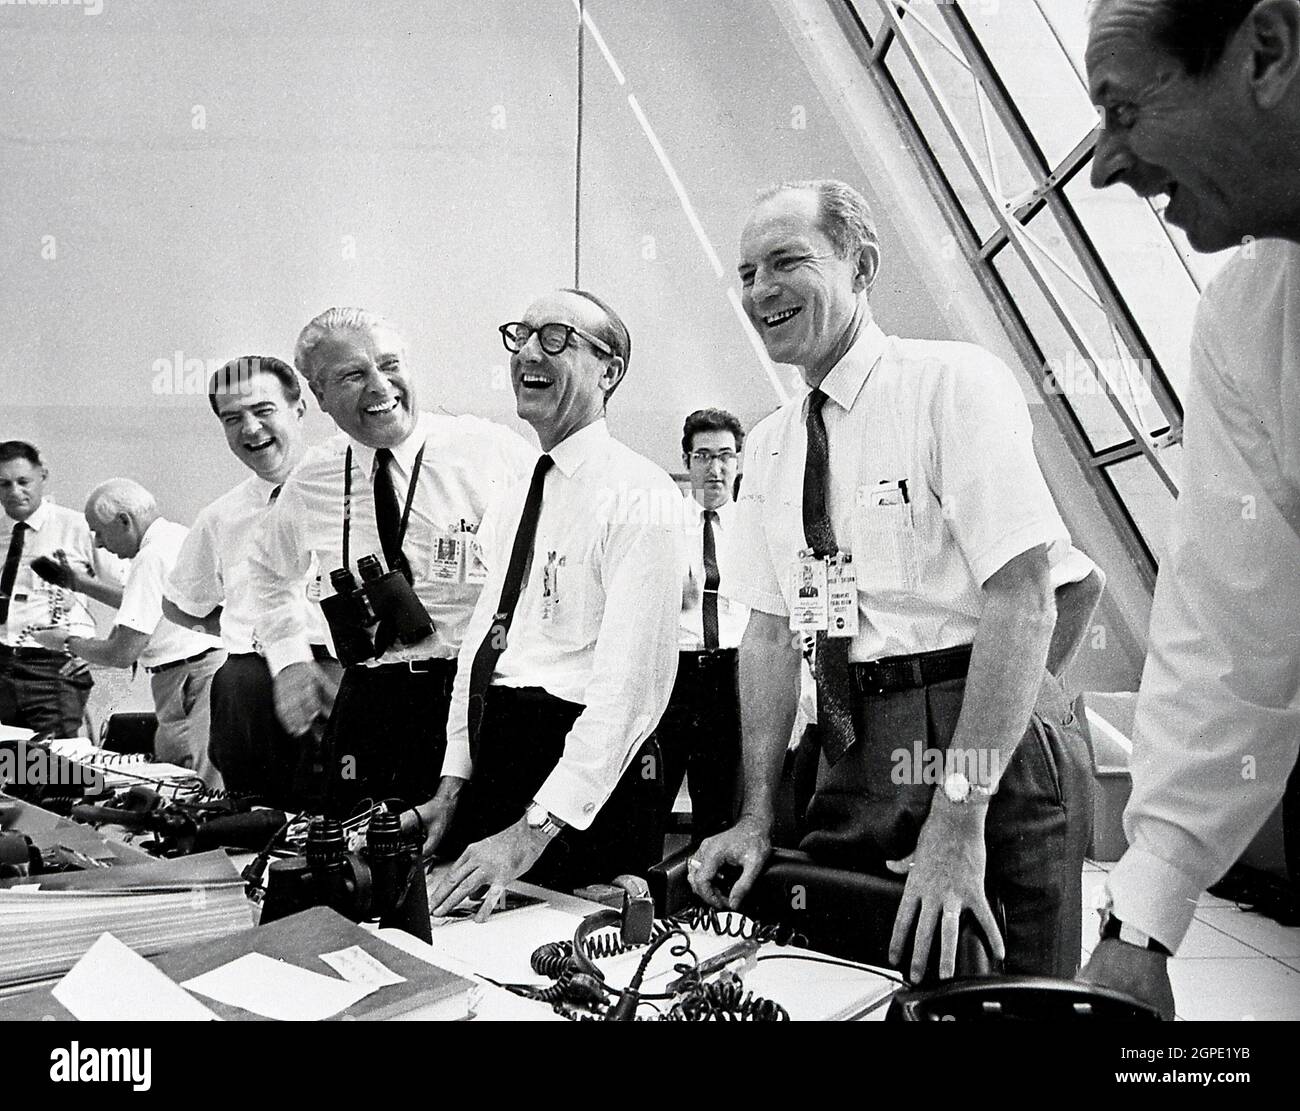 7/16/69 Missionsbeamte (einschließlich Dr. von Braun) entspannen sich im Launch Control Center nach dem erfolgreichen Apollo 11 Liftoff 69-H-1159, NASA-Beamte, (von links nach rechts) Charles W. Mathews; Dr. Wernher von Braun, Direktor, Marshall Space Flight Center (MSFC); Dr. George E. Mueller, Associate Administrator für Marned Space Flight; Und Air Force LT. General Samuel C. Phillips, Apollo Program Director, feiern den erfolgreichen Start von Apollo 11 im Kontrollraum des Kennedy Space Center (KSC) am 16. Juli 1969. Die Apollo 11-Mission mit einer Besatzung von drei Personen wird durch das Startfahrzeug Saturn V verstärkt: Stockfoto